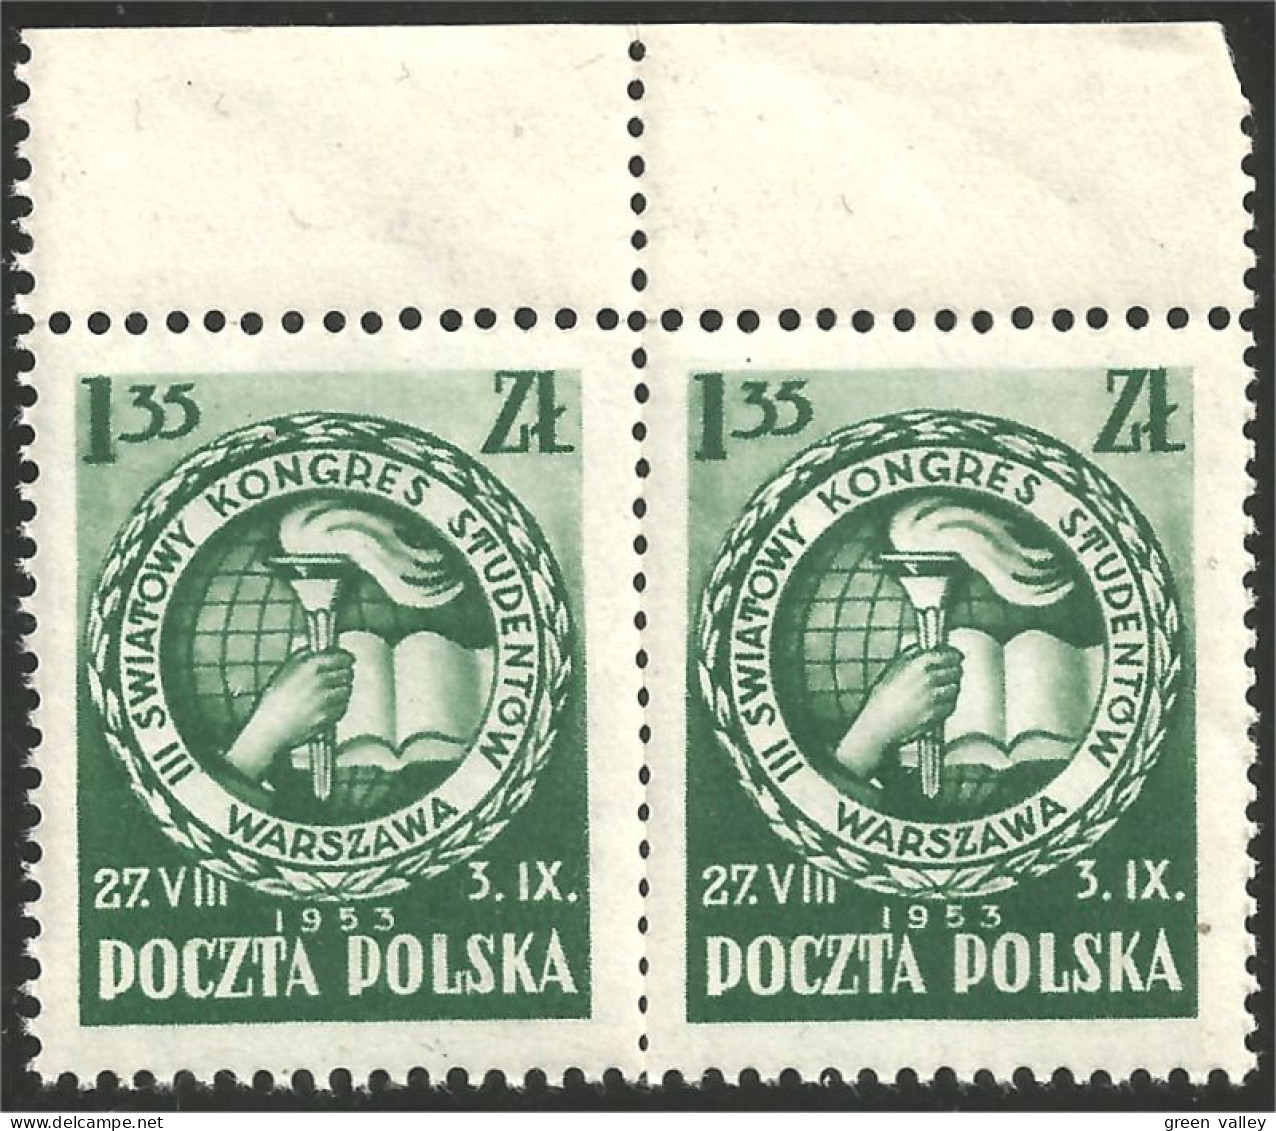 740 Pologne Students Congress Etudiants Paire Pair Bord De Feuille Margin Copy MNH ** Neuf SC (POL-227) - Unused Stamps